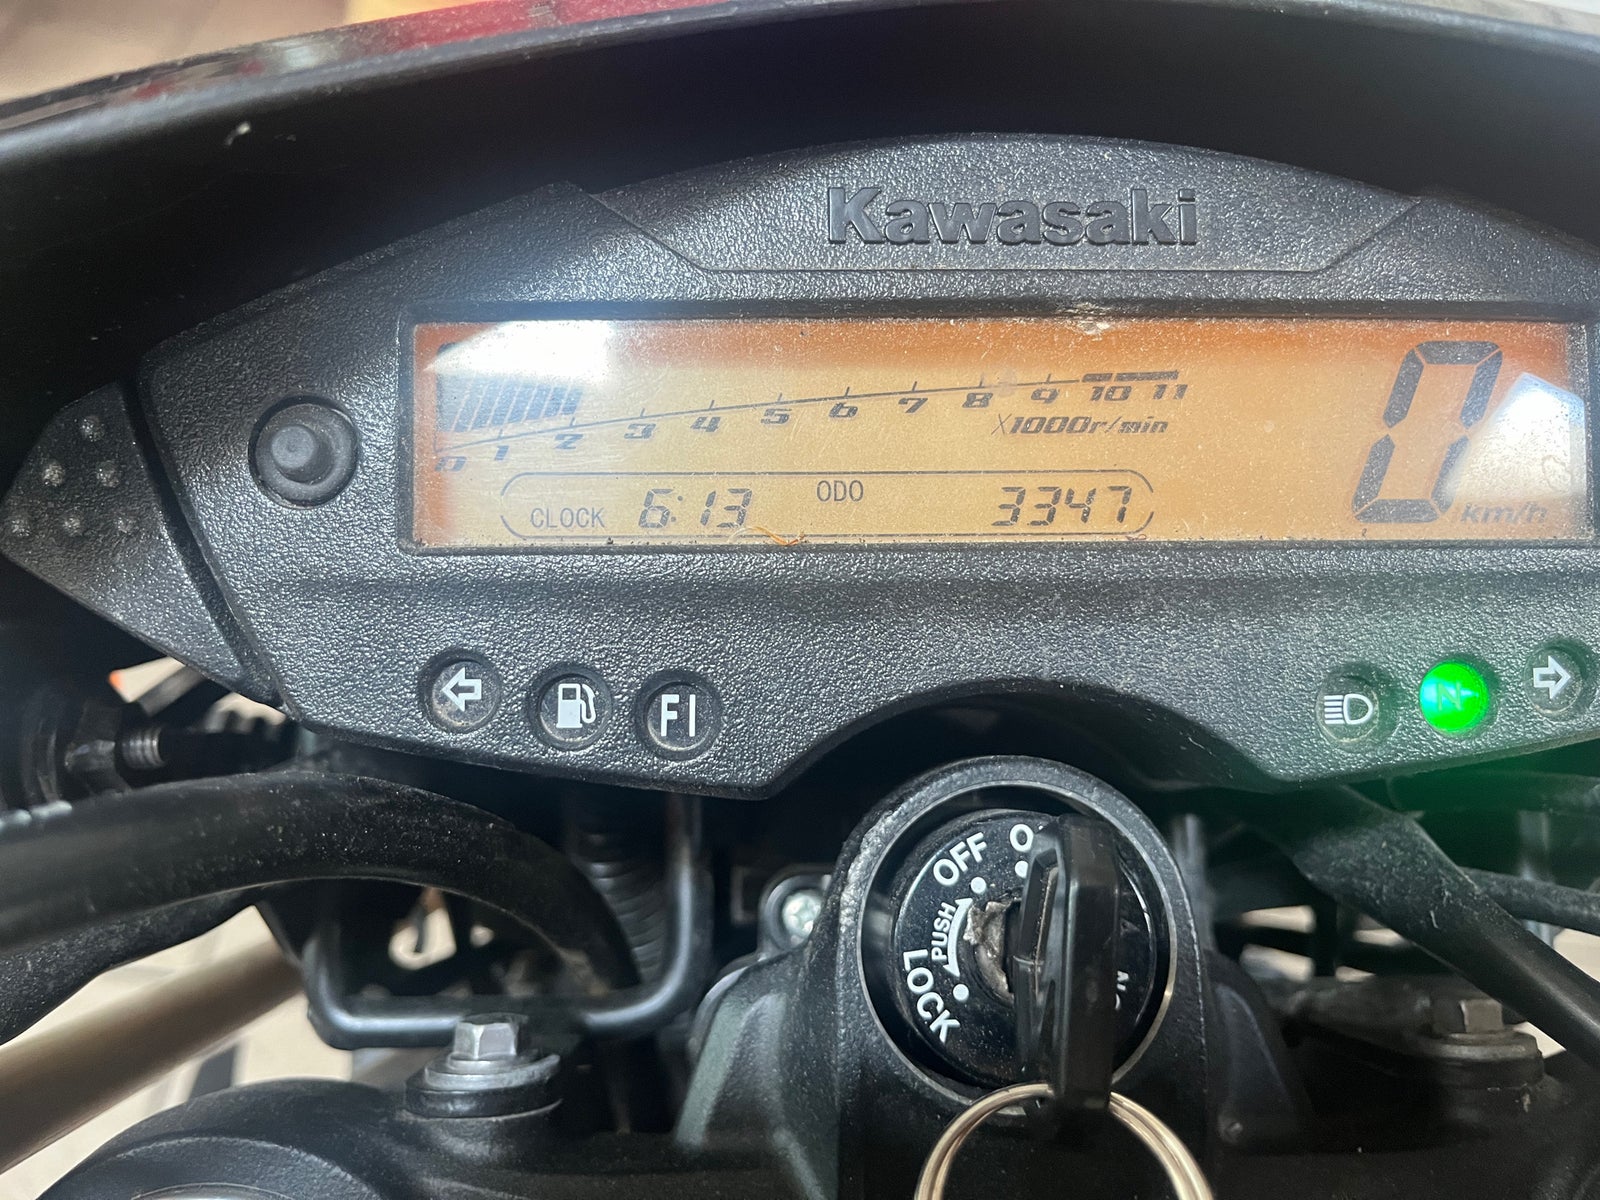 Yamaha, Kawasaki d-tracker, 125 ccm